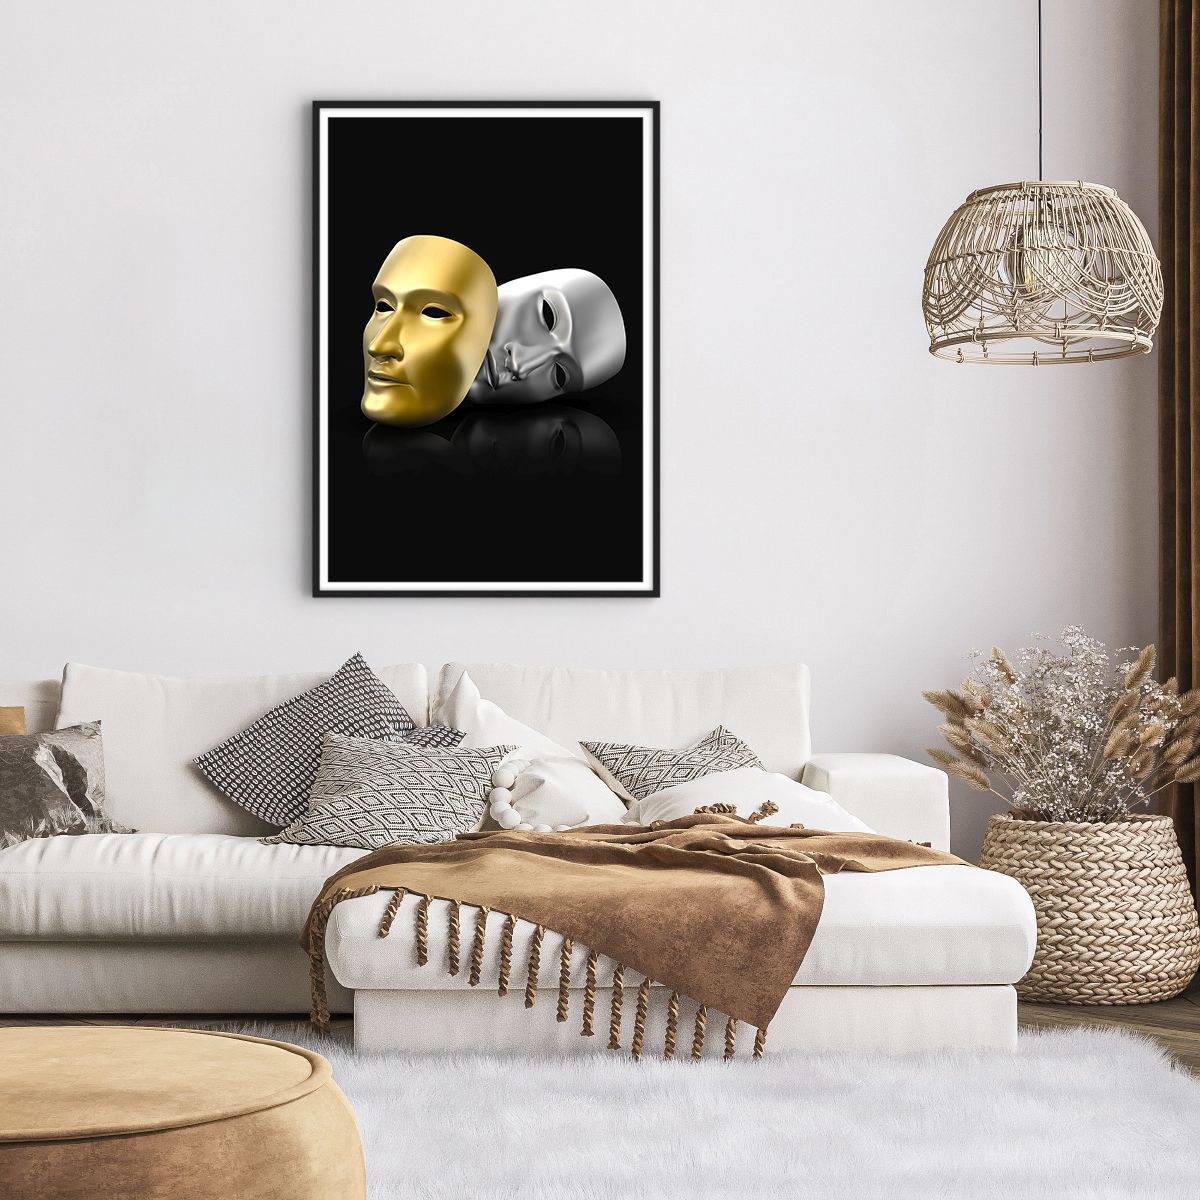 Affiche dans un cadre noir Masque De Carnaval, Affiche dans un cadre noir Art, Affiche dans un cadre noir Théâtre, Affiche dans un cadre noir Carnaval, Affiche dans un cadre noir Culture